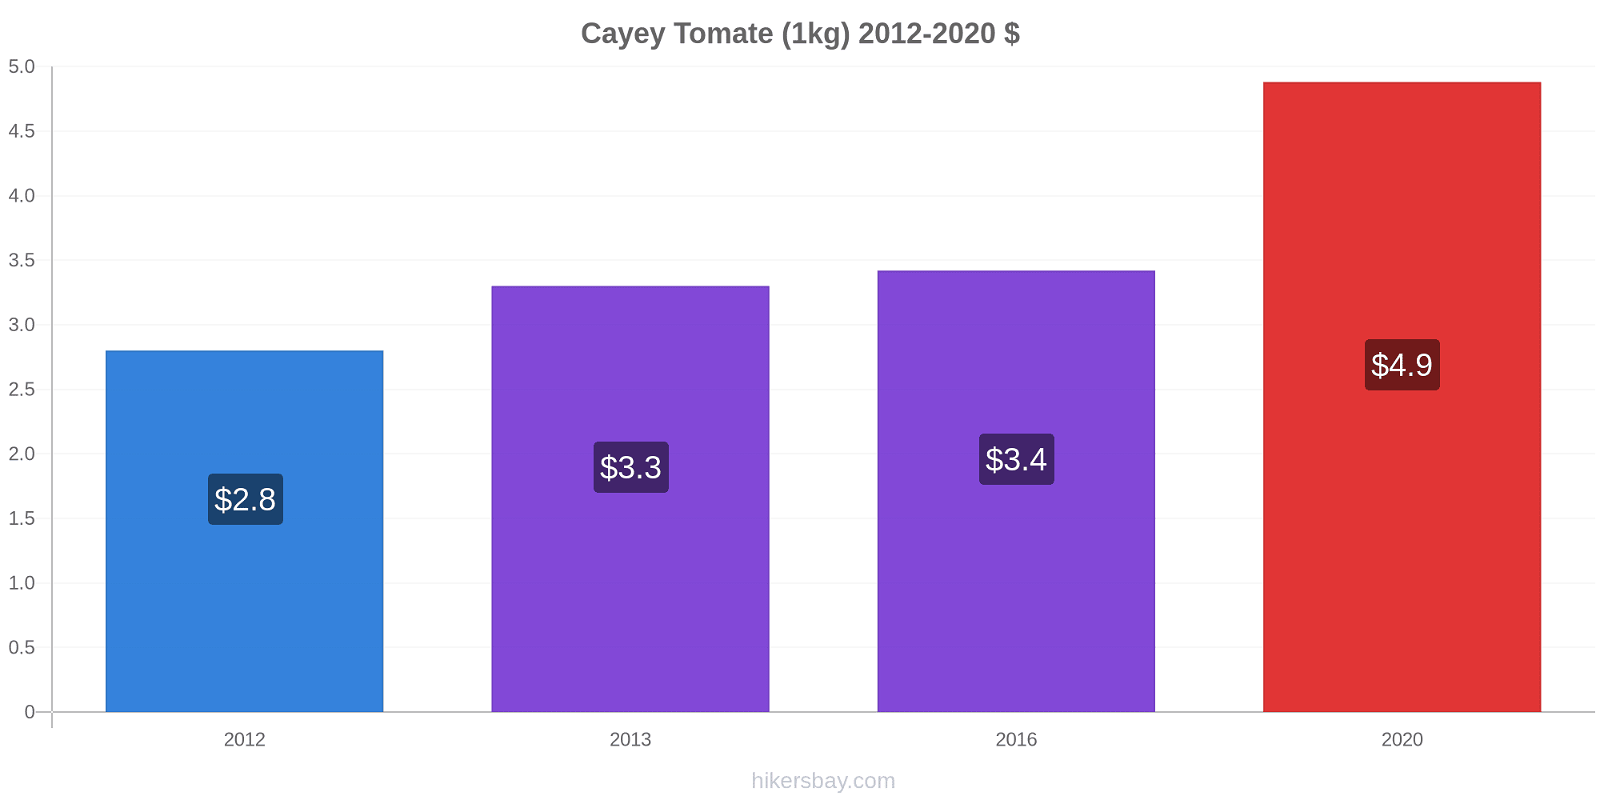 Cayey cambios de precios Tomate (1kg) hikersbay.com